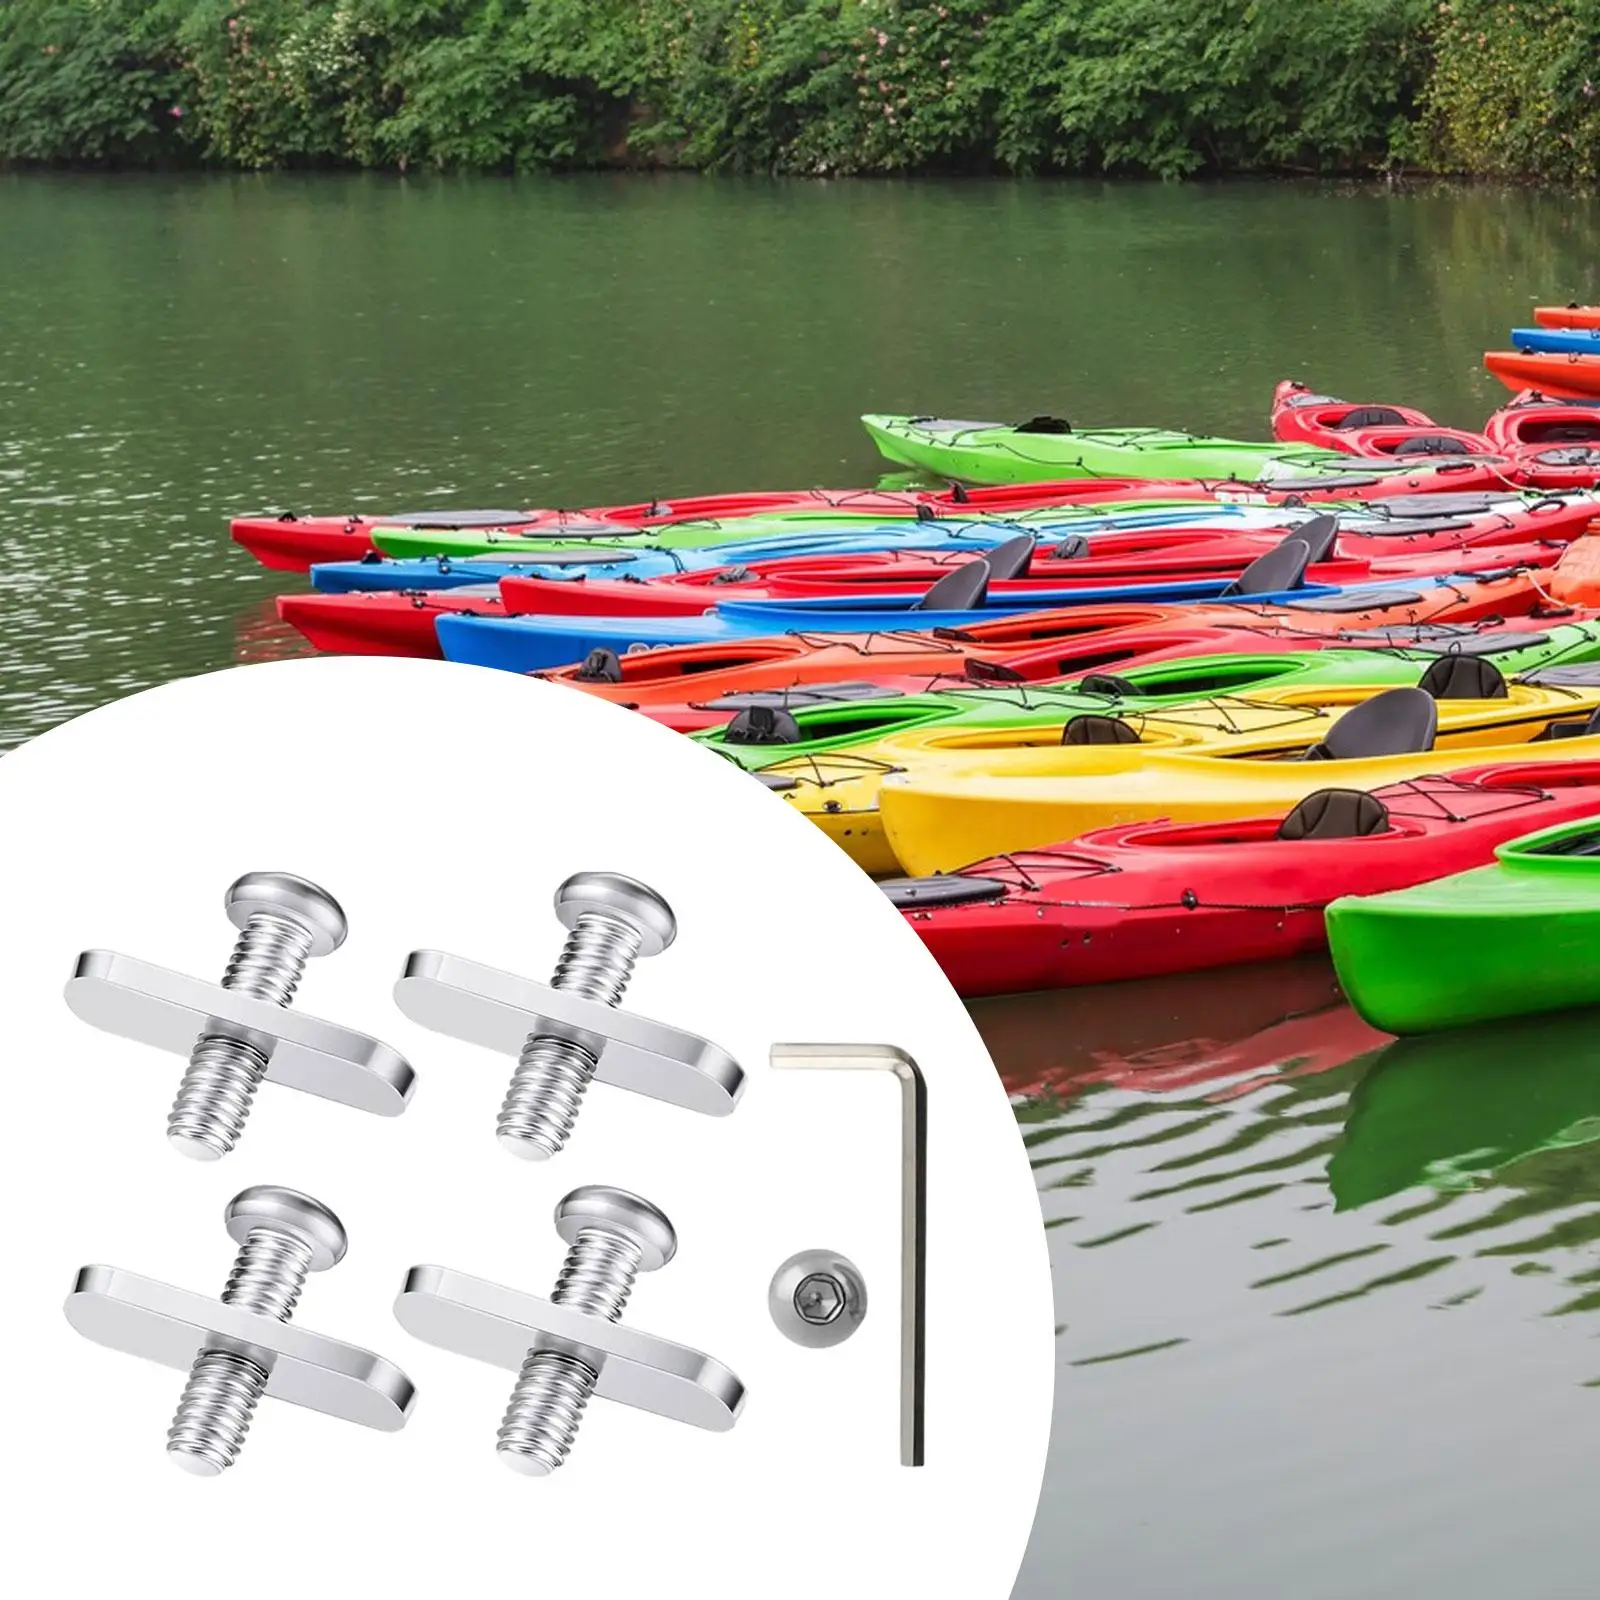 4 Pack Kayak Rail Track Screws Track Nuts, Mounting Screws Stainless Steel Tie Down Eyelet for Kayak Boat Canoe Rails Fishing